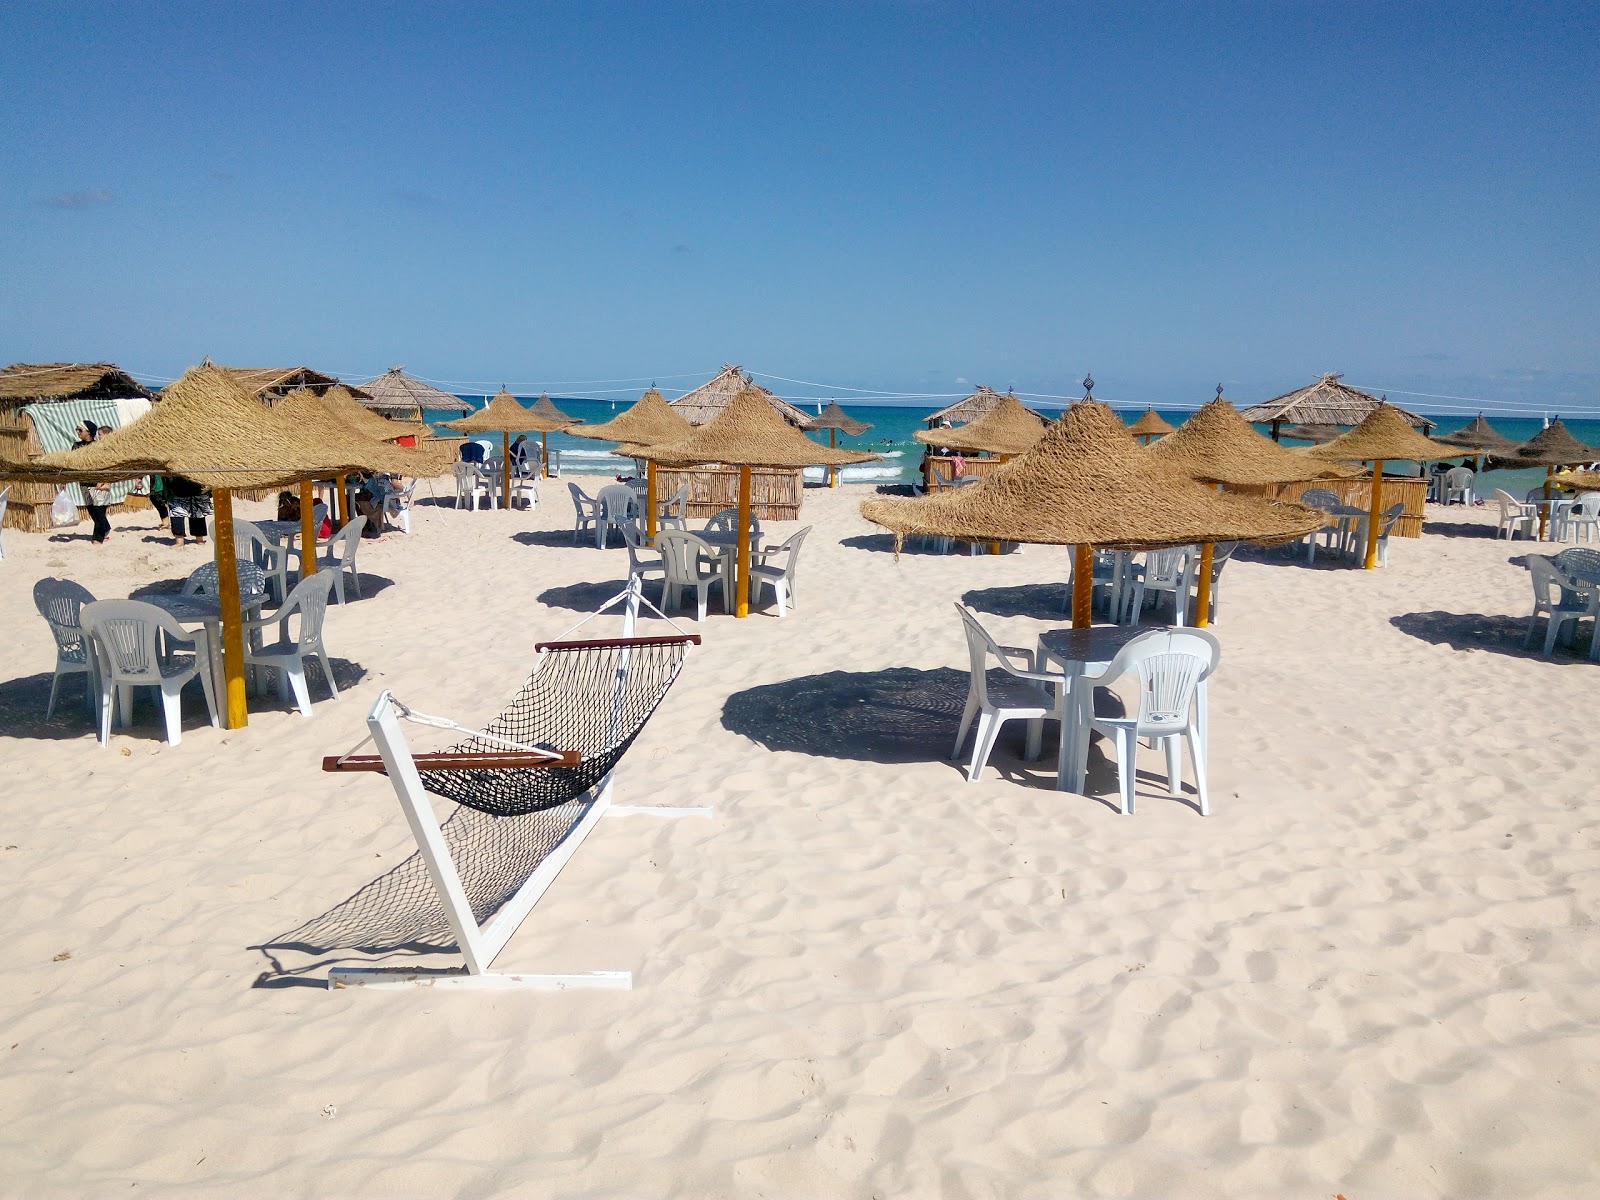 Photo of Ghar El Melh beach resort area